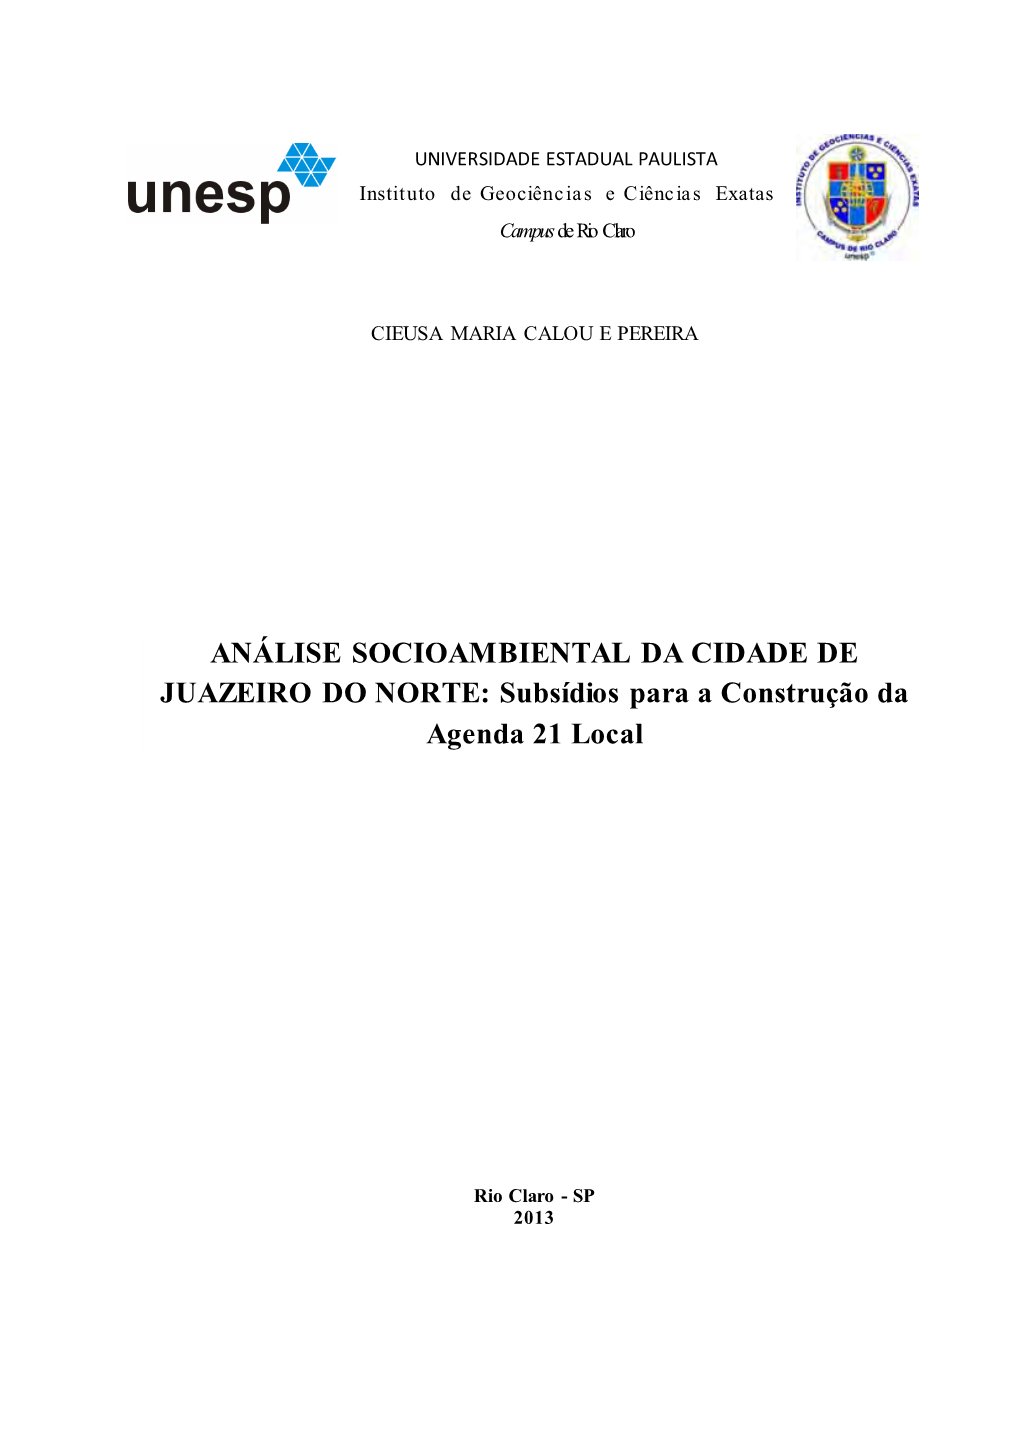 ANÁLISE SOCIOAMBIENTAL DA CIDADE DE JUAZEIRO DO NORTE: Subsídios Para a Construção Da Agenda 21 Local